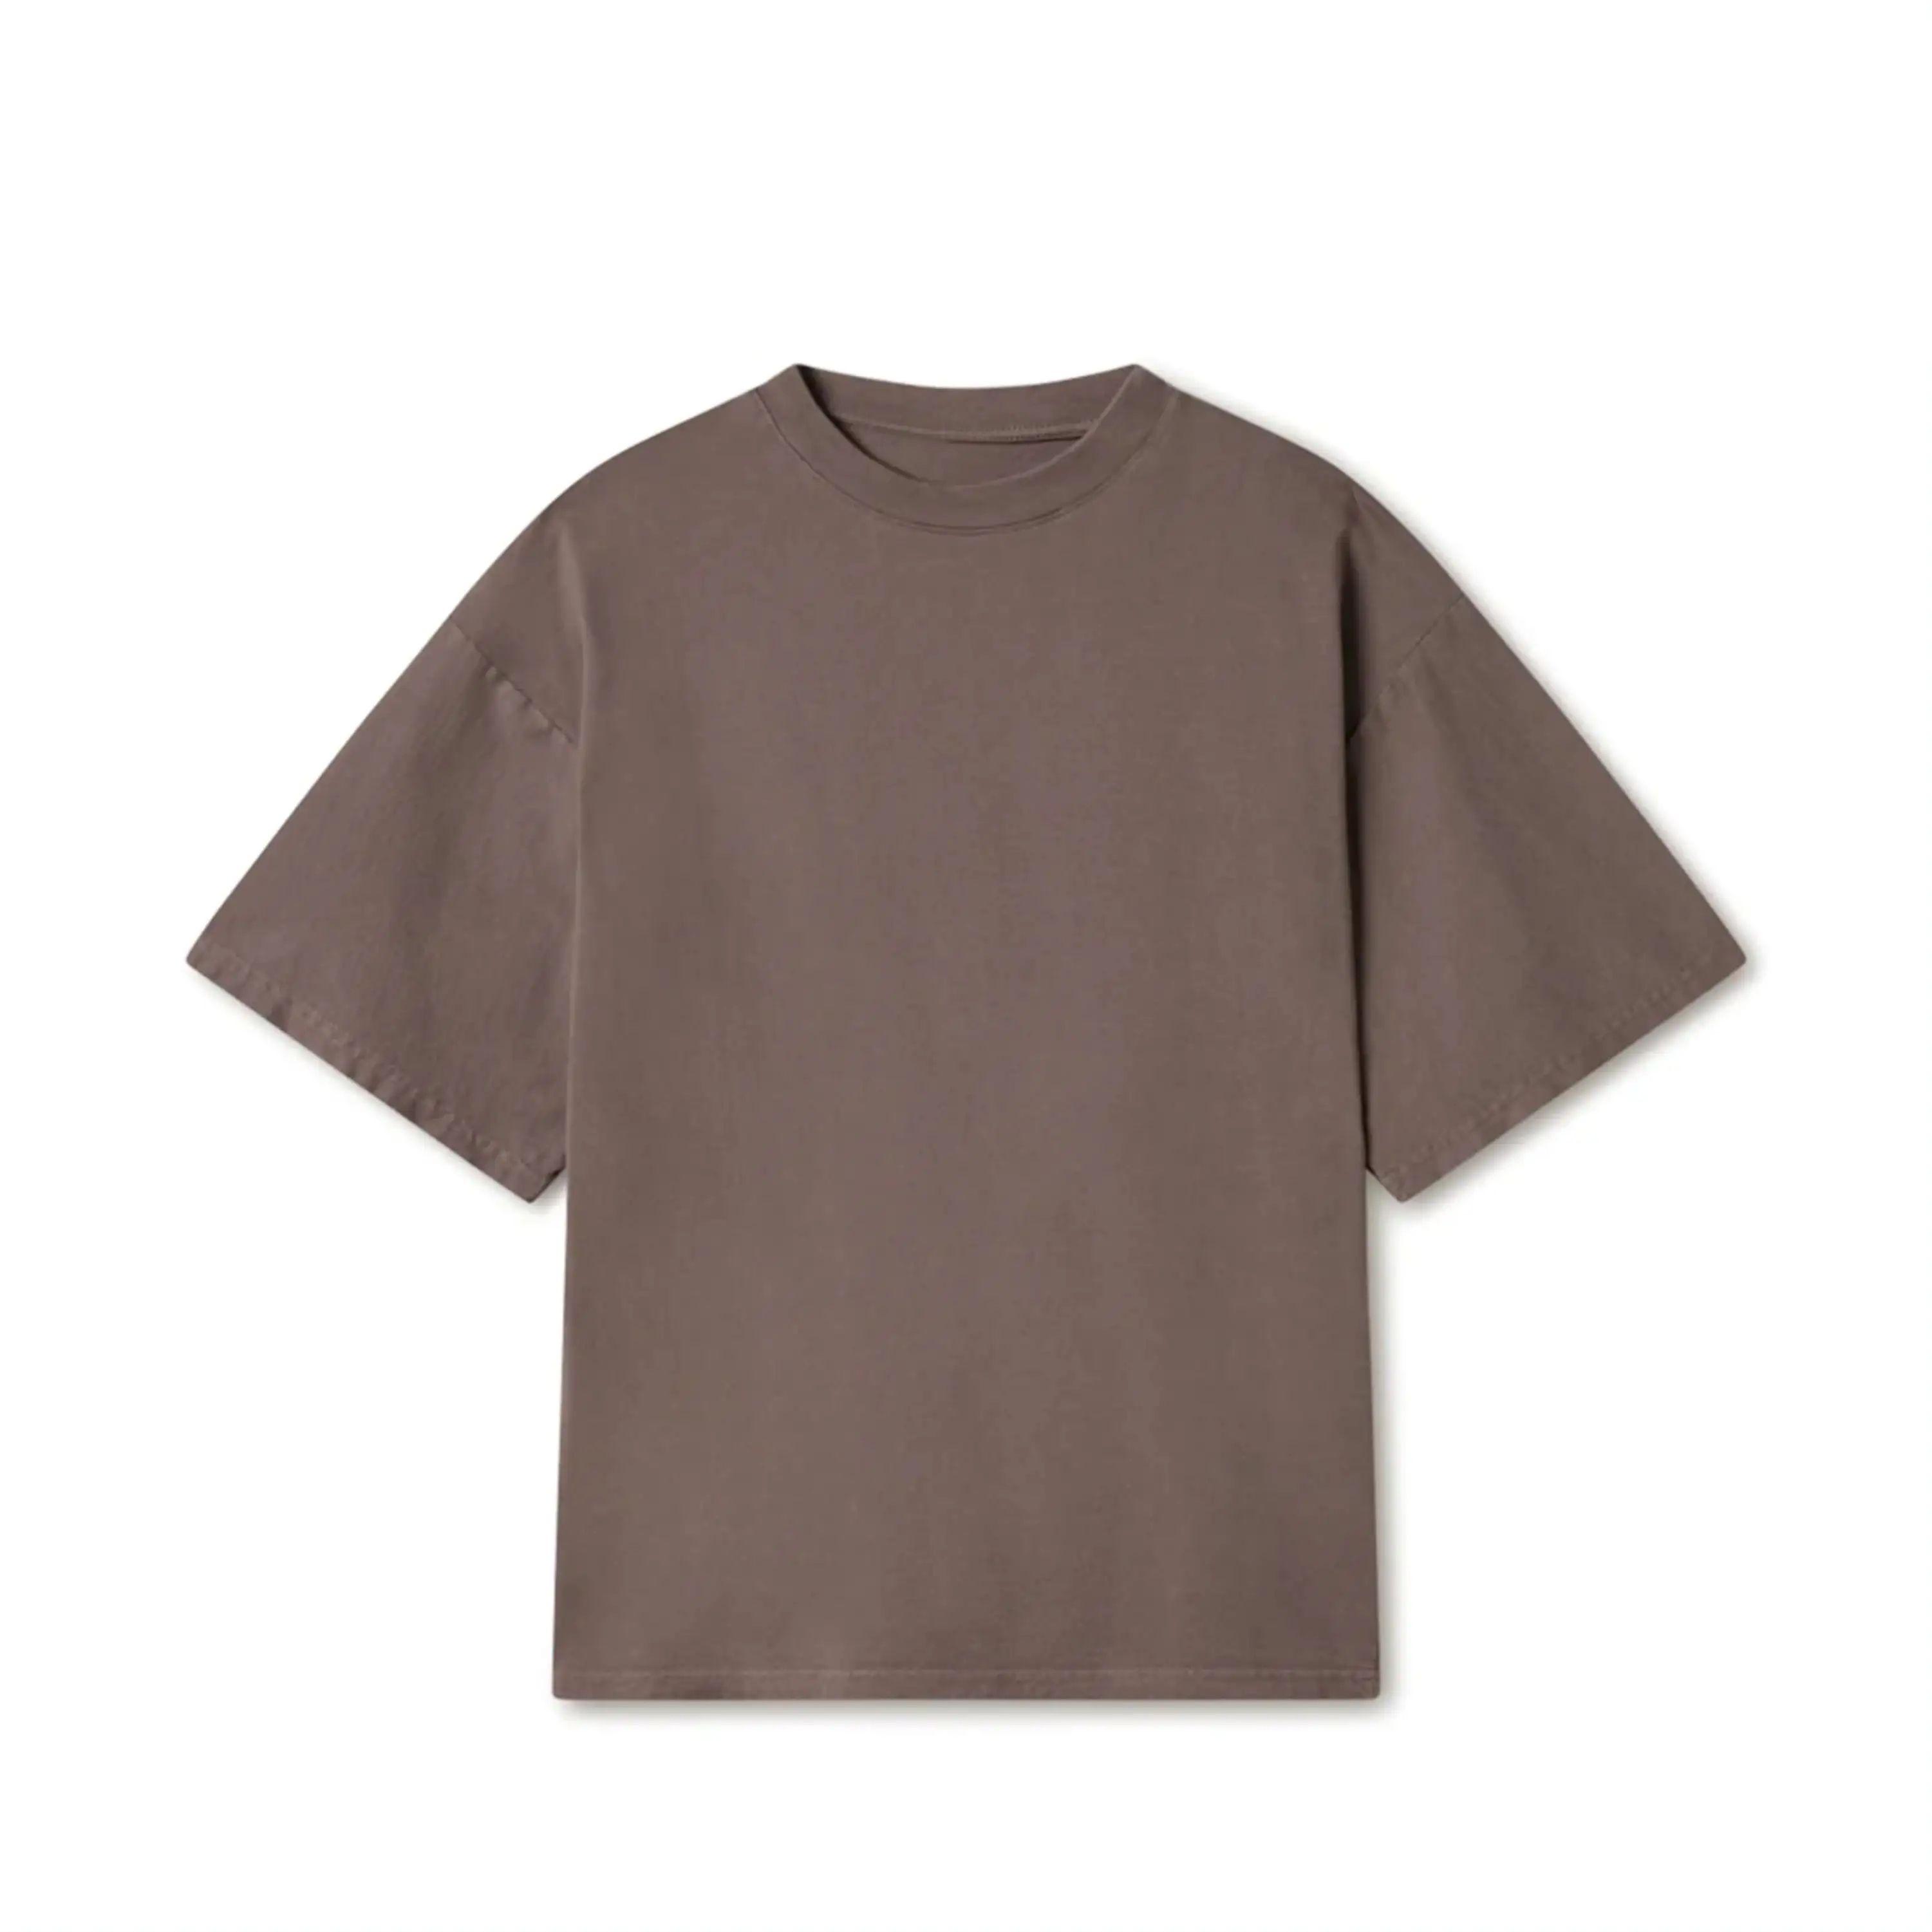 ब्रांड कपड़े नई शैली कछुआ गर्दन बड़ा फिट शर्ट आकस्मिक मॉक गर्दन और आकार भारी वजन 180 जीएसएम जर्सी कपास टी-शर्ट